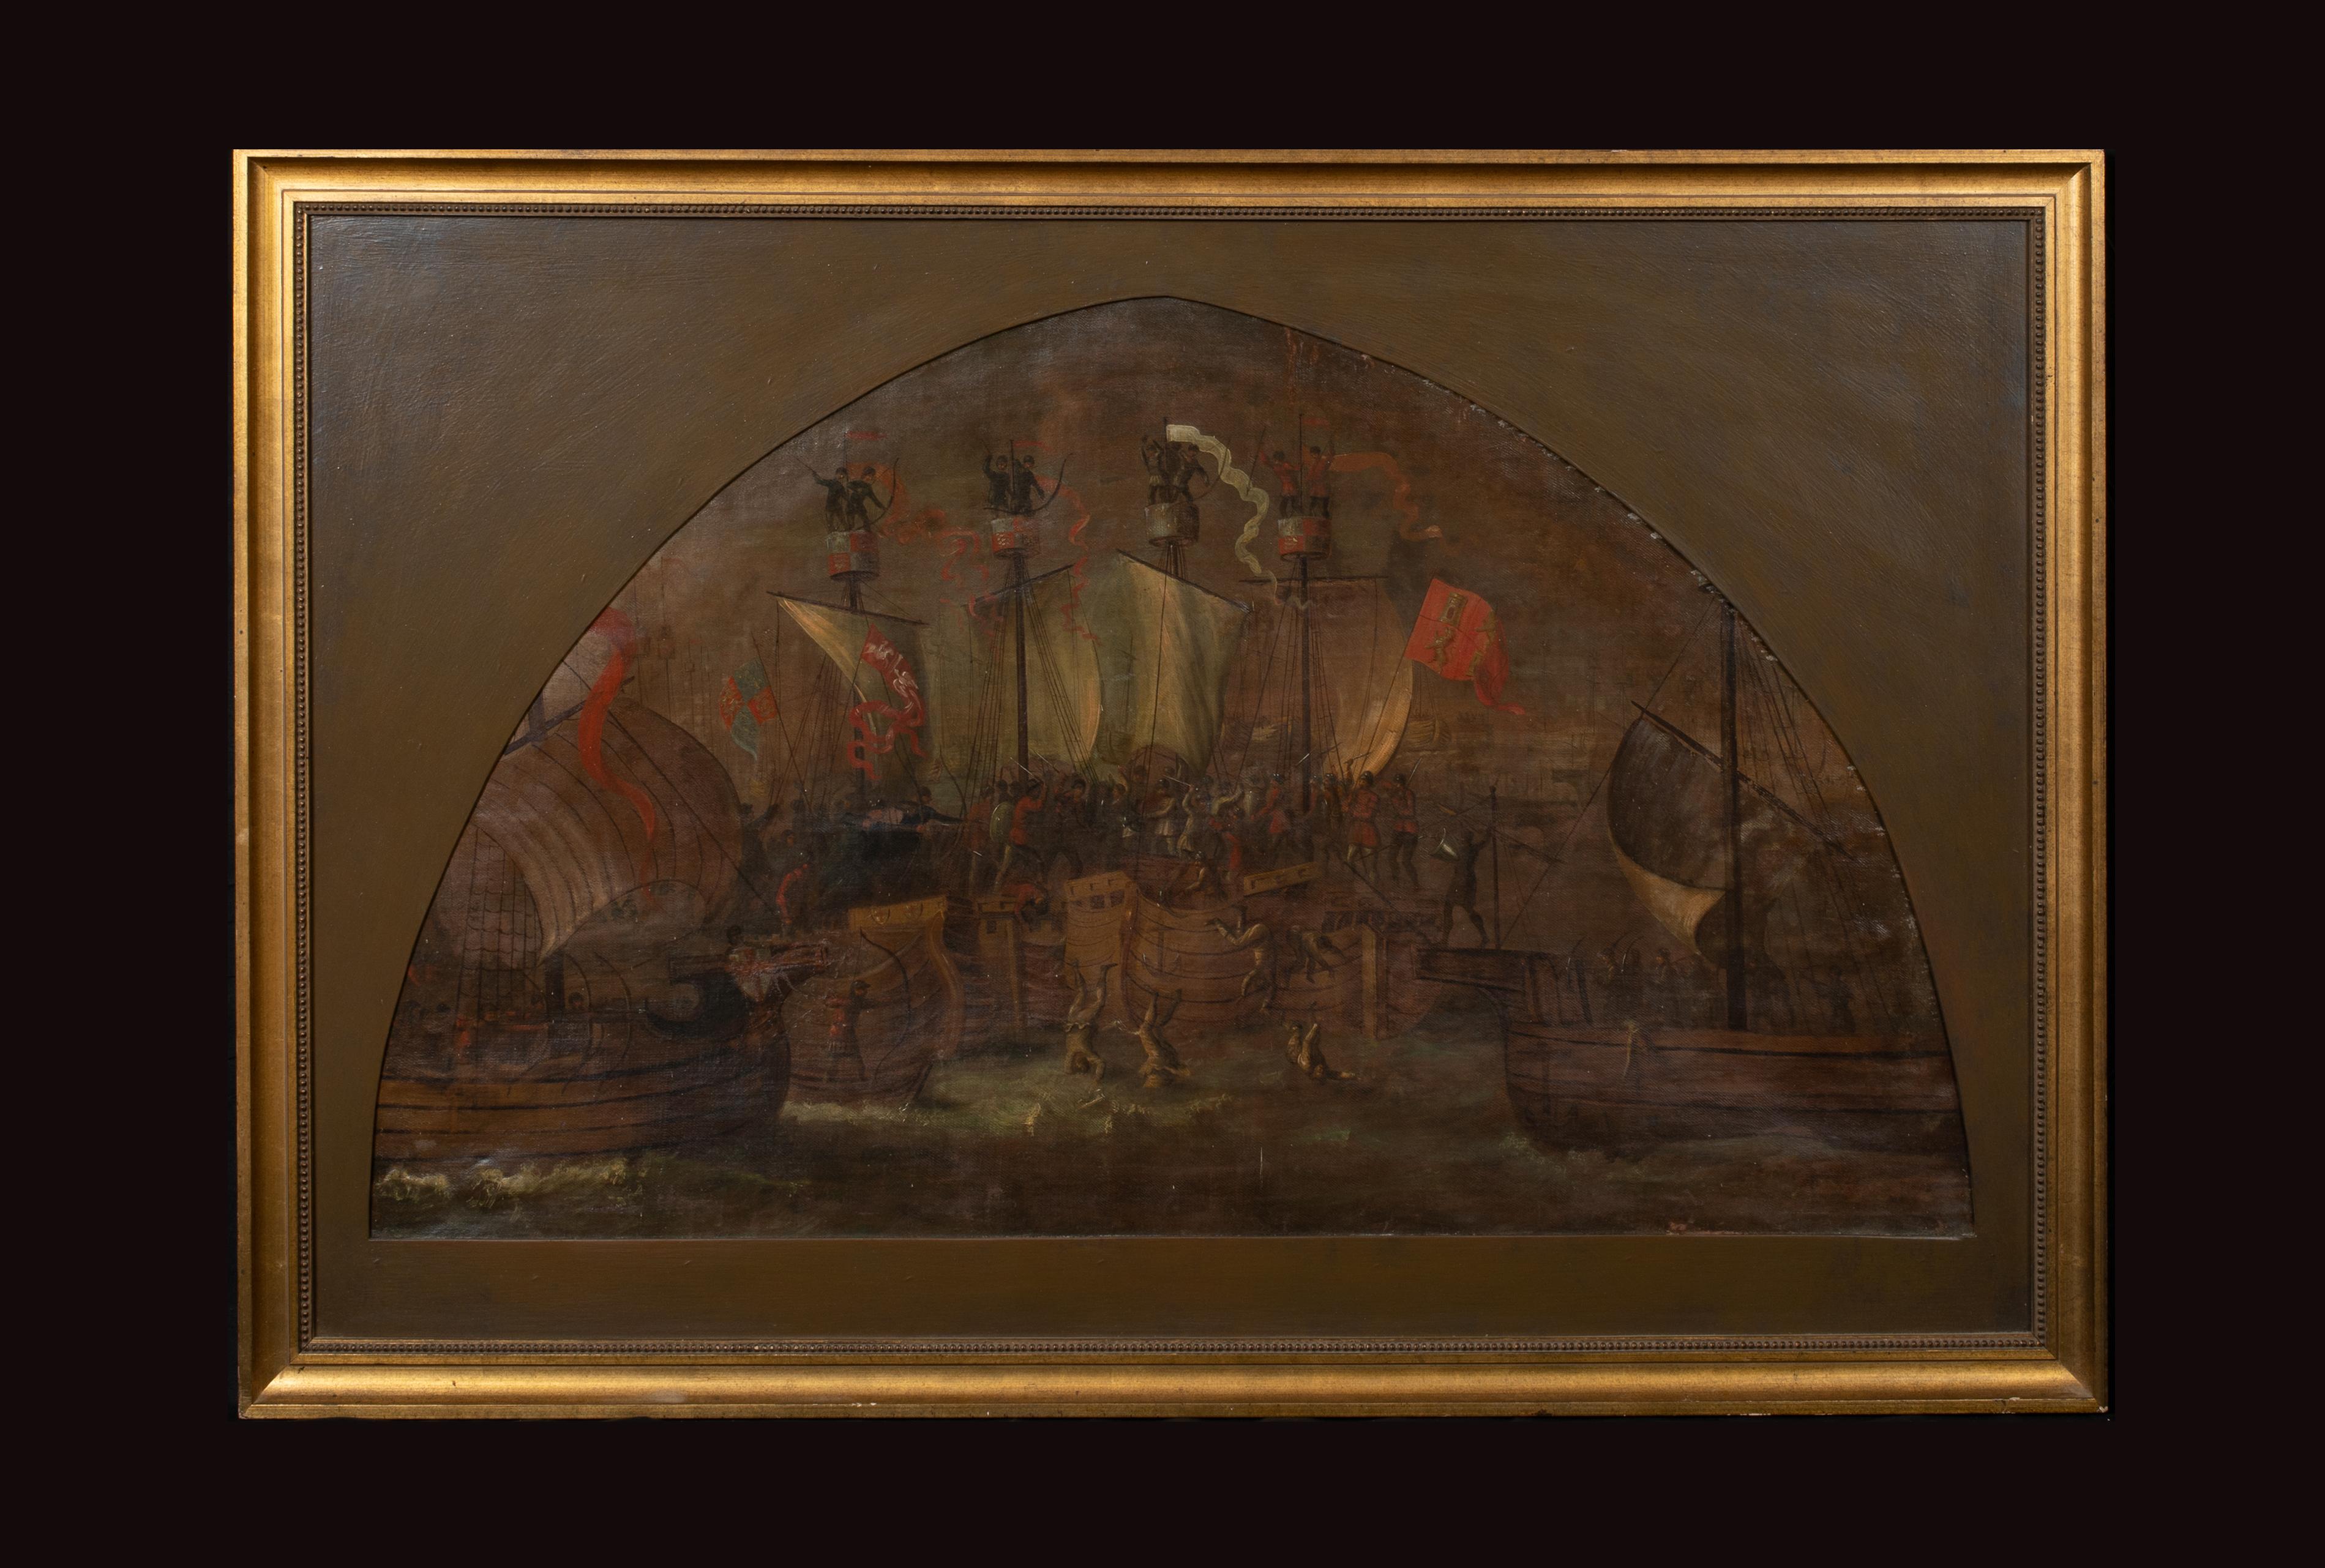 The Battle Of Sluys (1340) - Der Hundertjährige Krieg (1337-1453) – Painting von Unknown